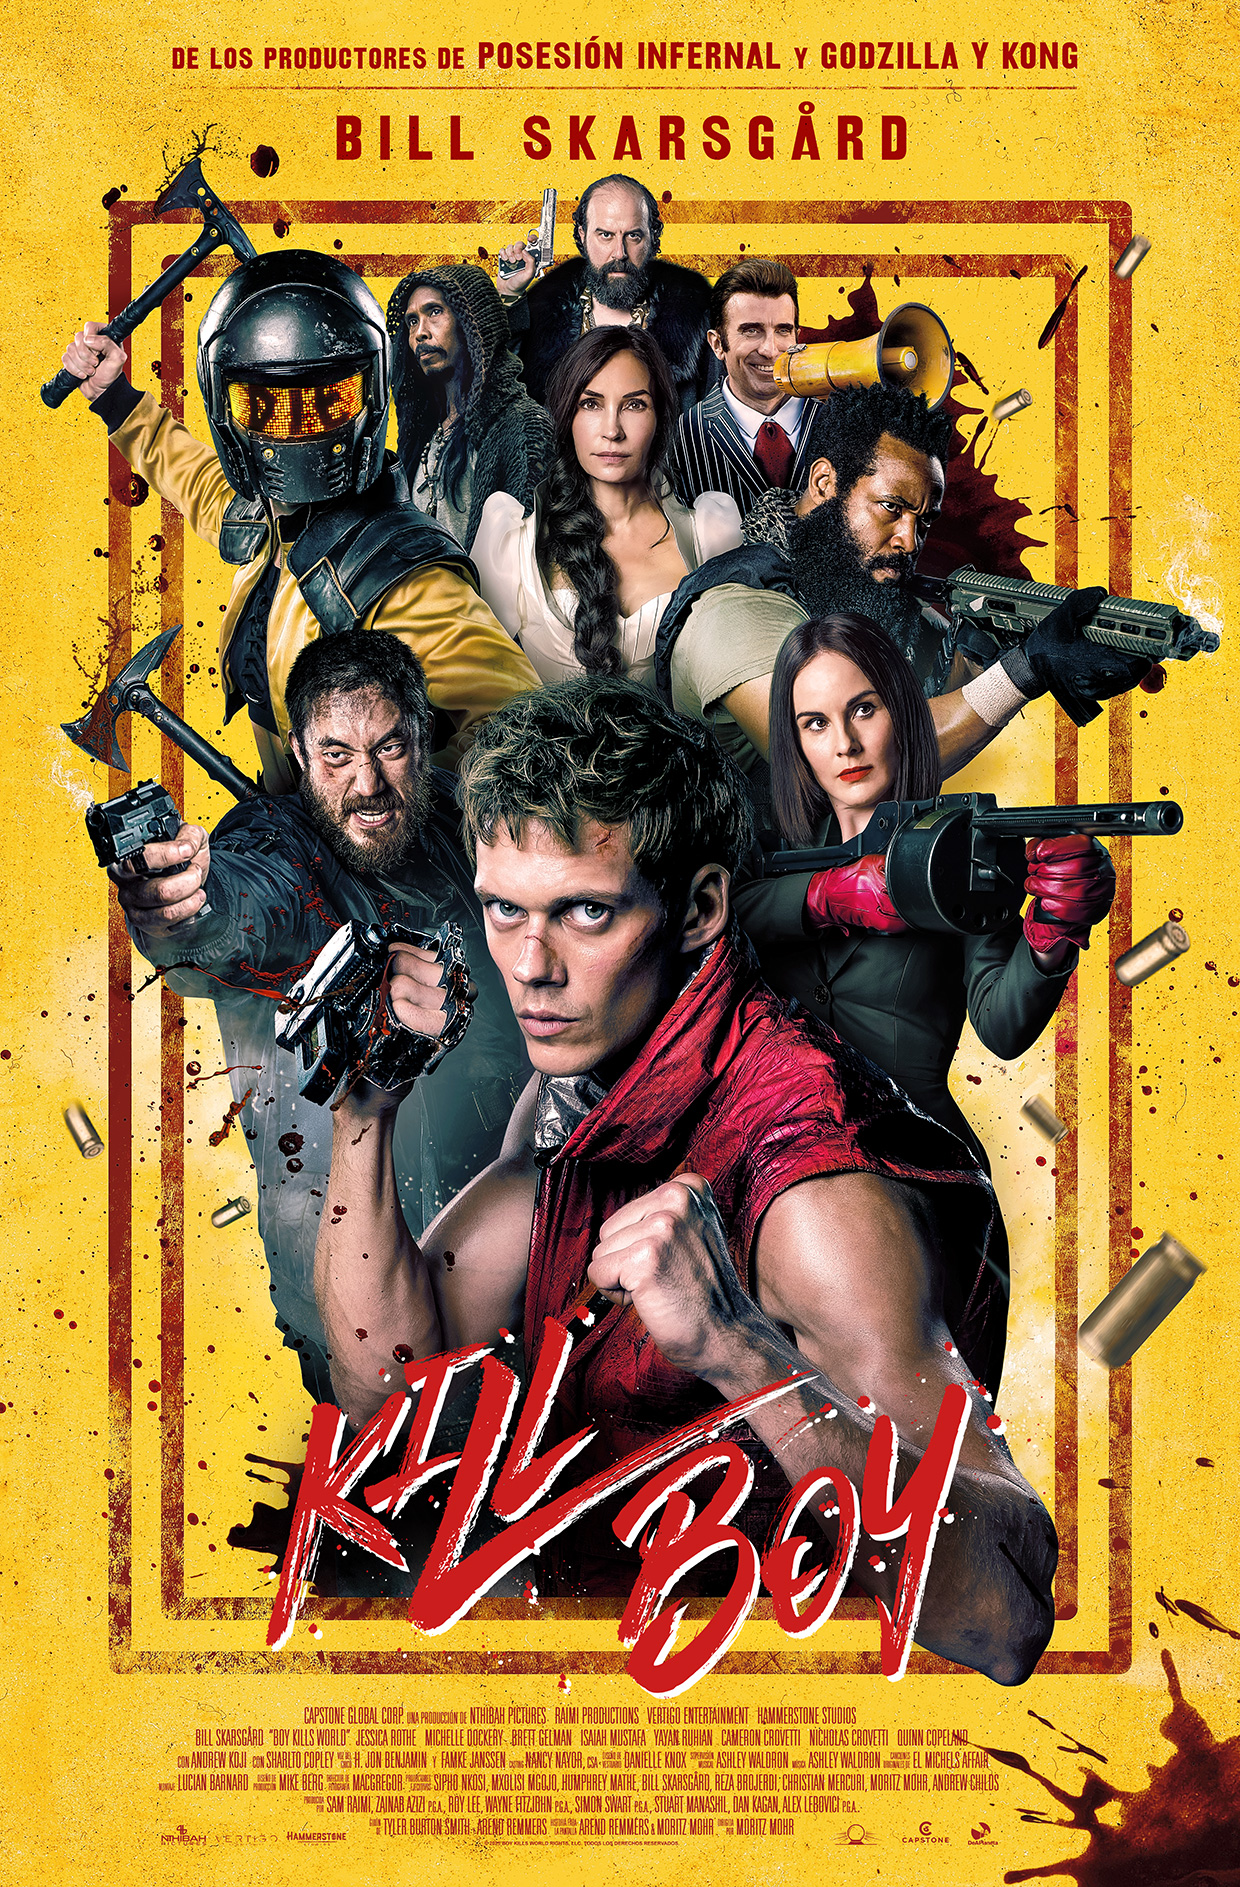 'Kill Boy', será la película inaugural en la I edición del Festival Internacional de Cine Fantástico y de Terror de Valladolid - PUFA (Pucela Fantástica)